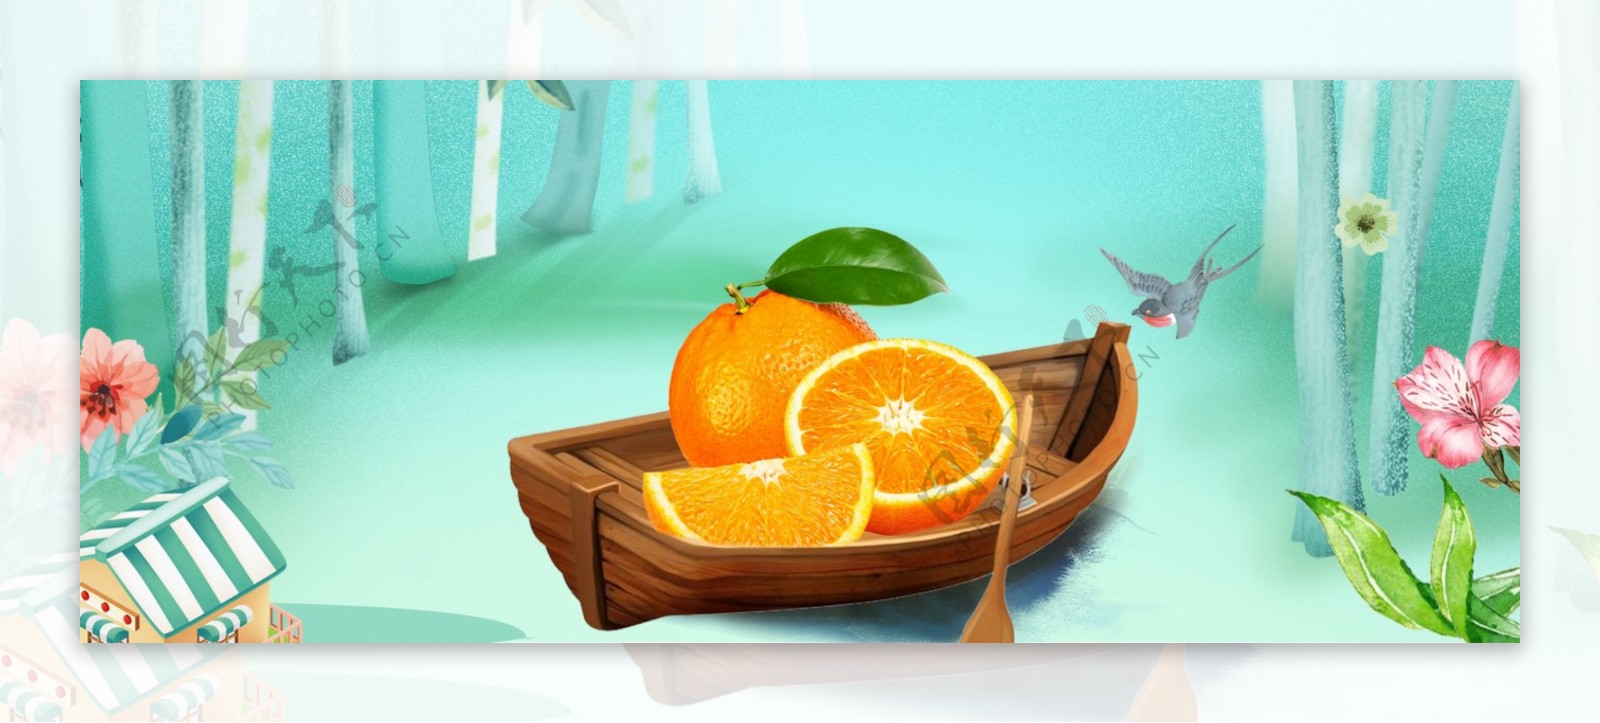 水果橙子首页海报